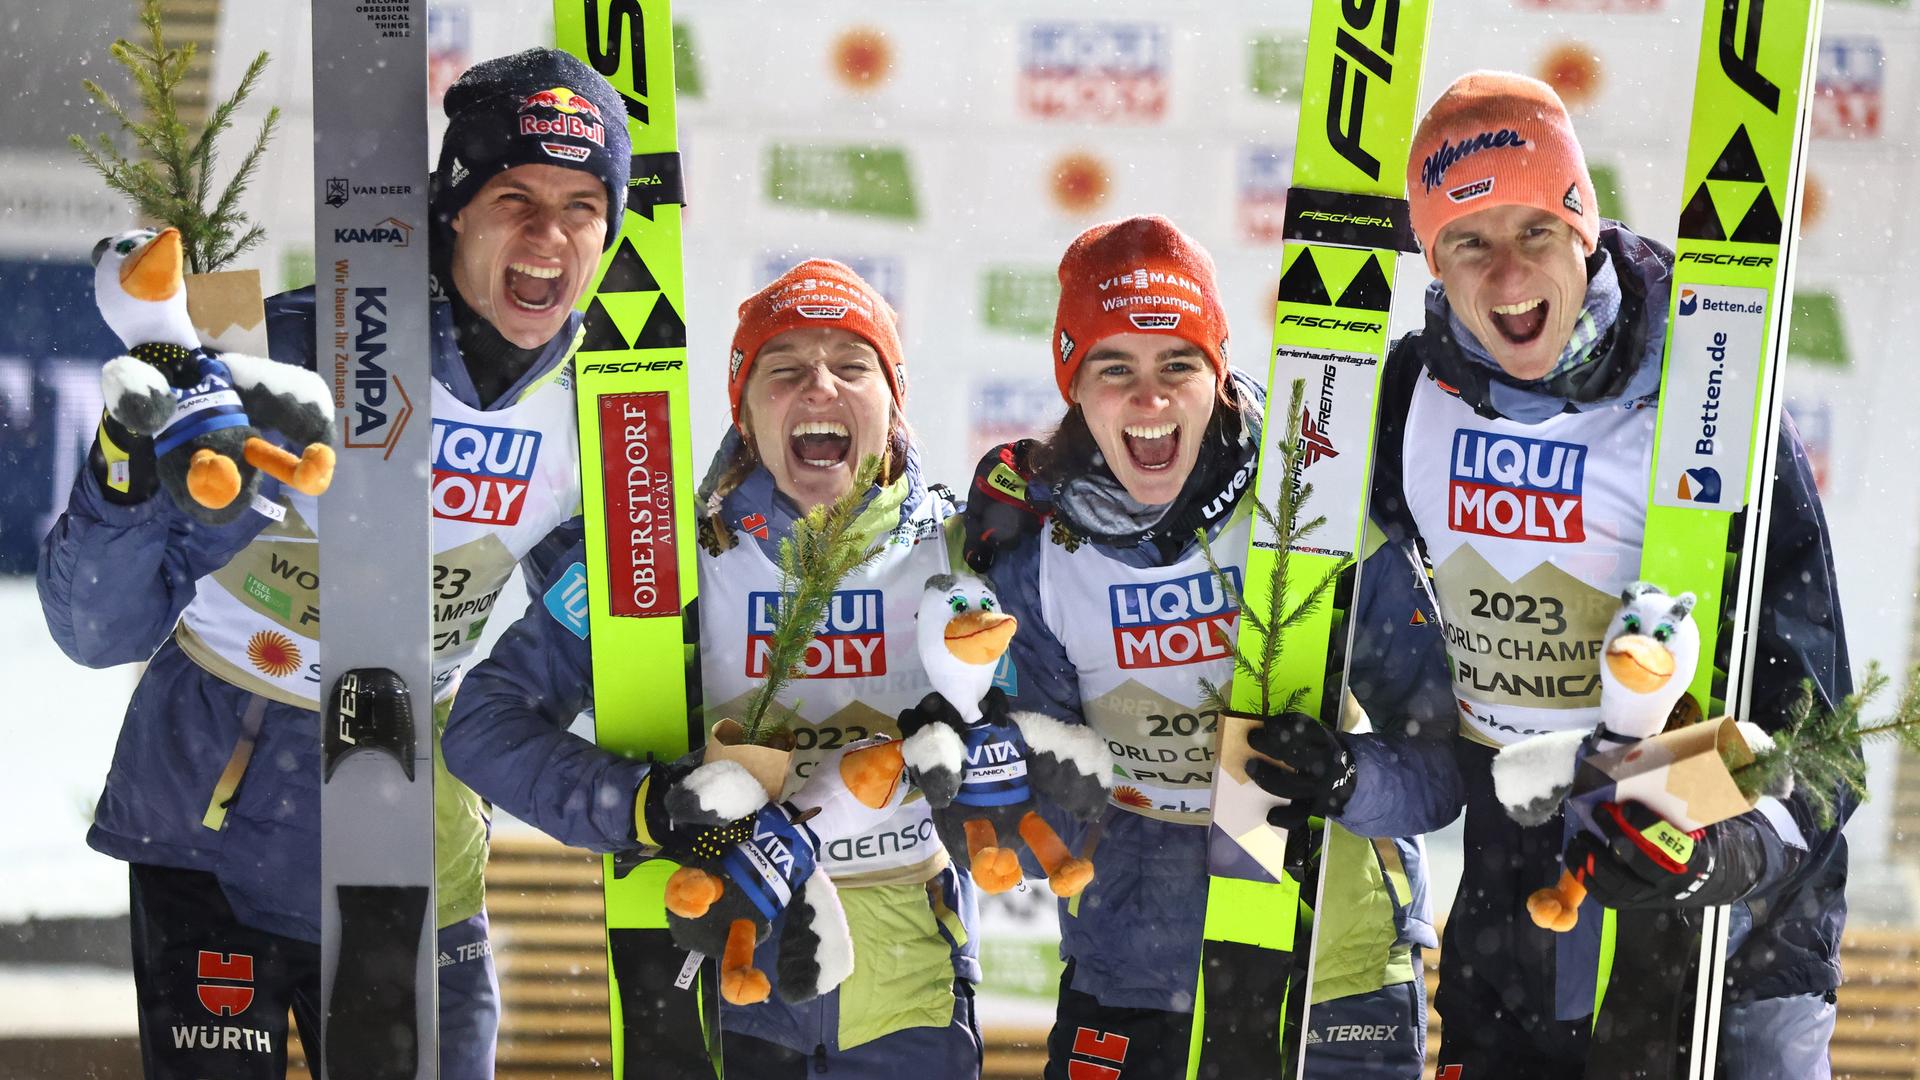 Die Ski-Springer Karl Geiger, Selina Freitag, Katharina Althaus, Andreas Wellinger aus Deutschland stehen zusammen und jubeln.